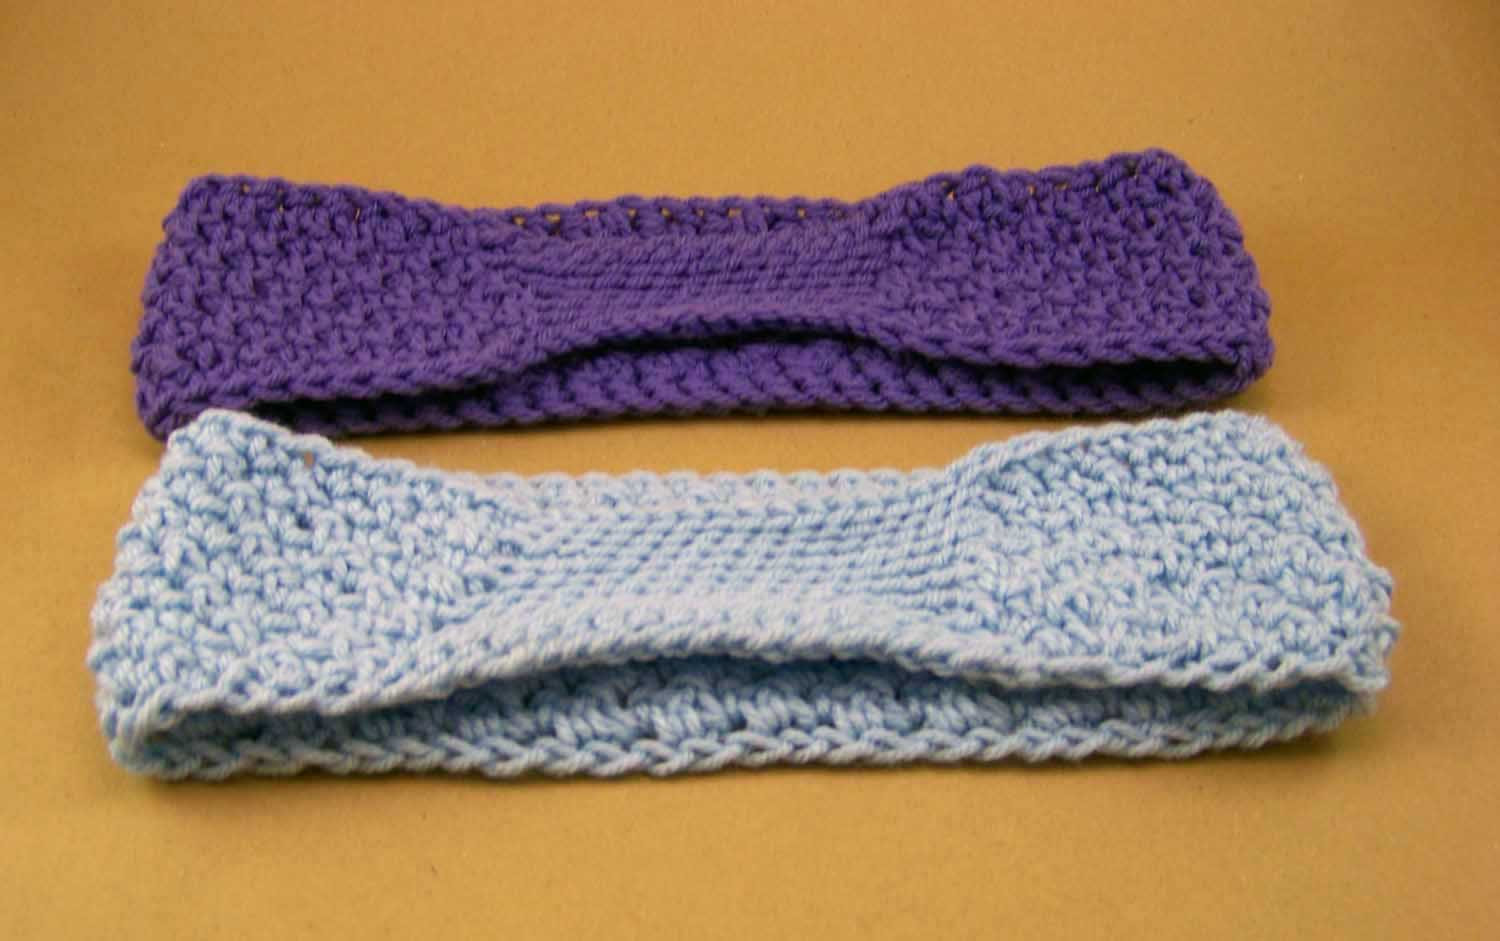 Crochet Headbands Ear Warmers Patterns Free Complimentary Pattern Textured Headbandear Warmer The Cotton Gin